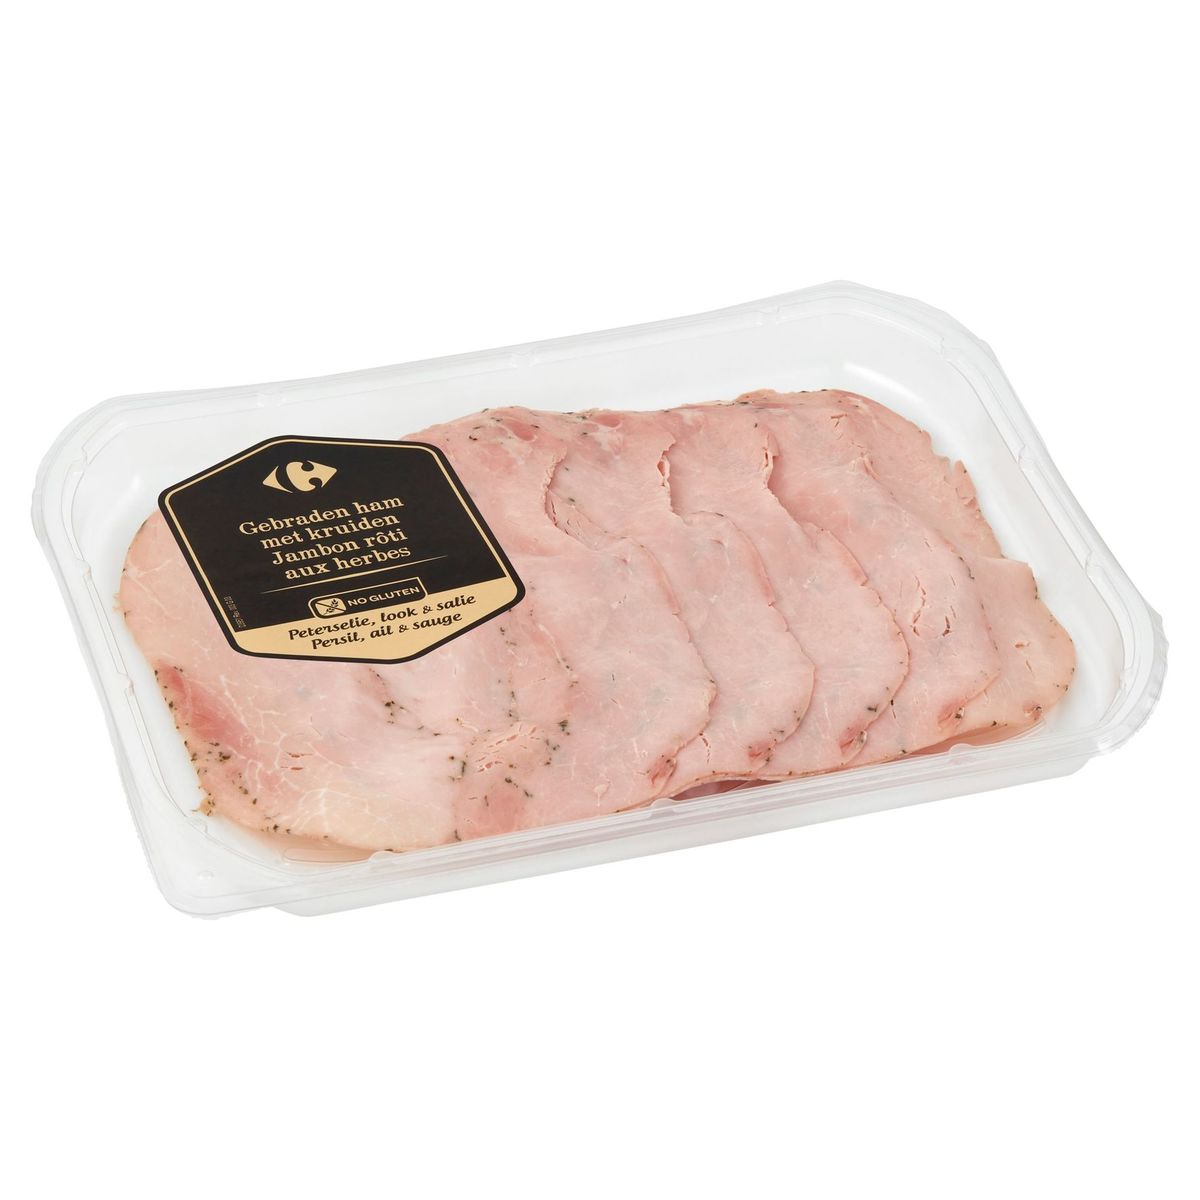 Carrefour Gebraden Ham met Kruiden 120 g